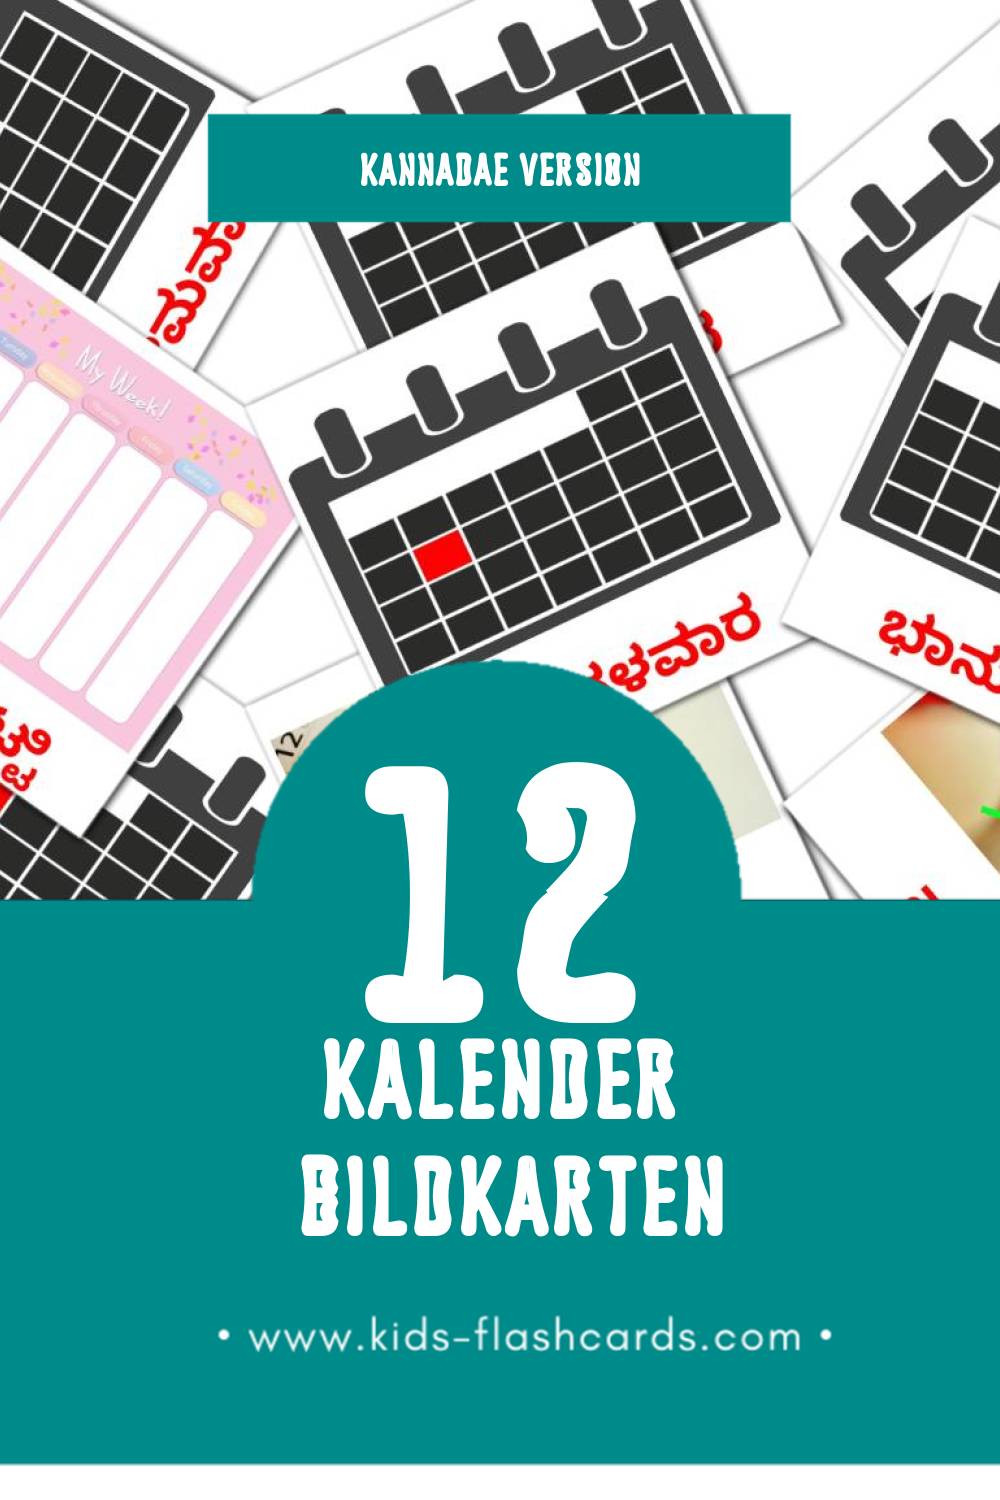 Visual ಕ್ಯಾಲೆಂಡರ್ Flashcards für Kleinkinder (12 Karten in Kannada)